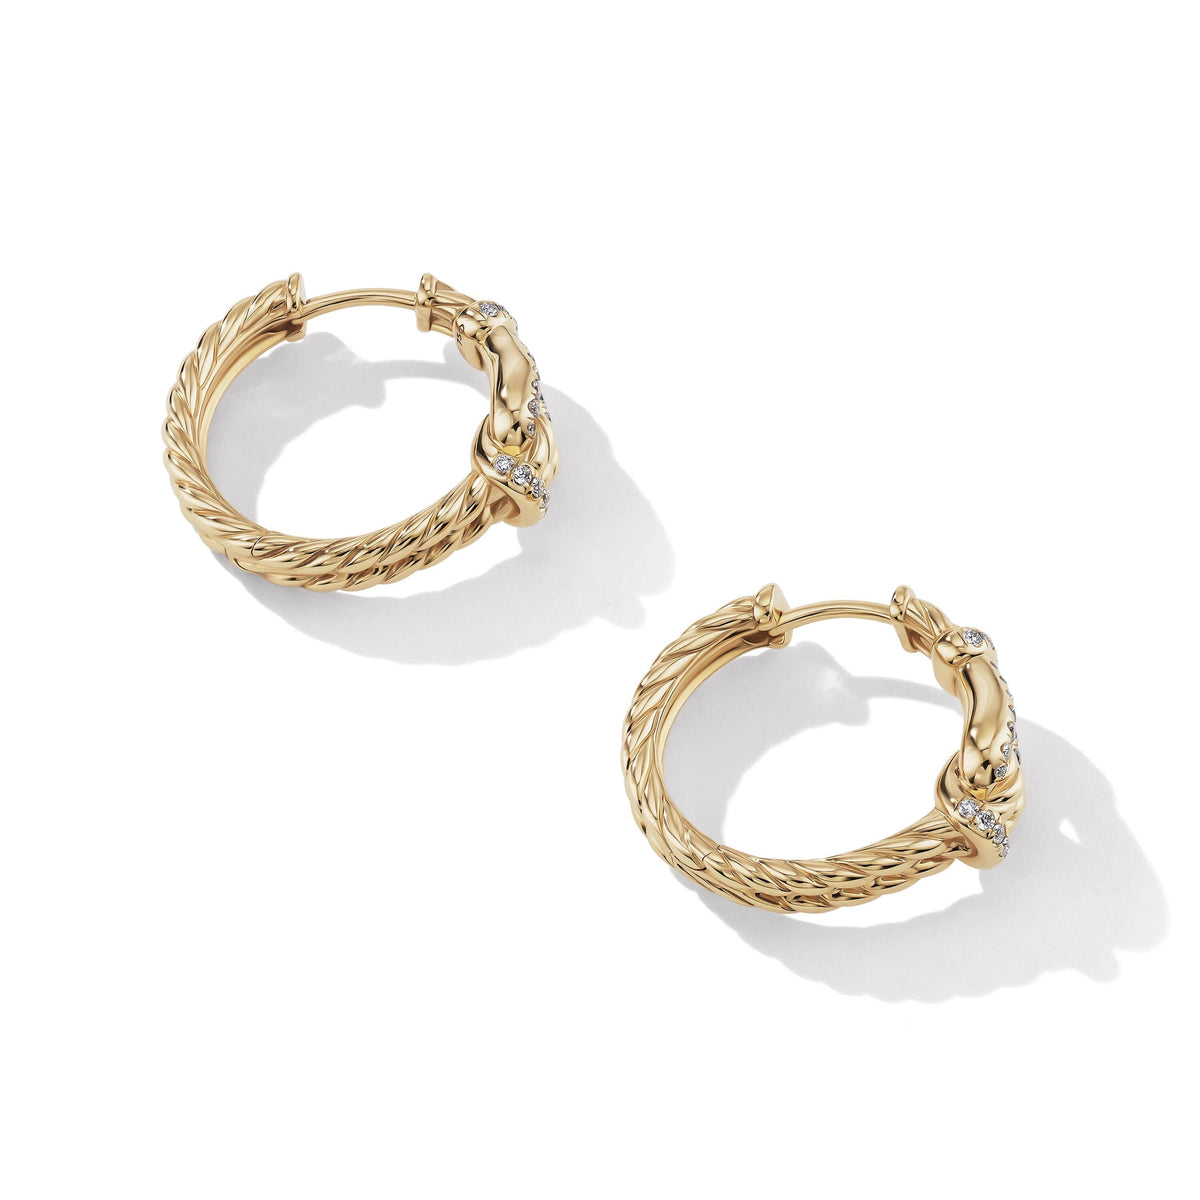 Thoroughbred Loop Hoop Earrings in 18K Yellow Gold with Pavé Diamonds